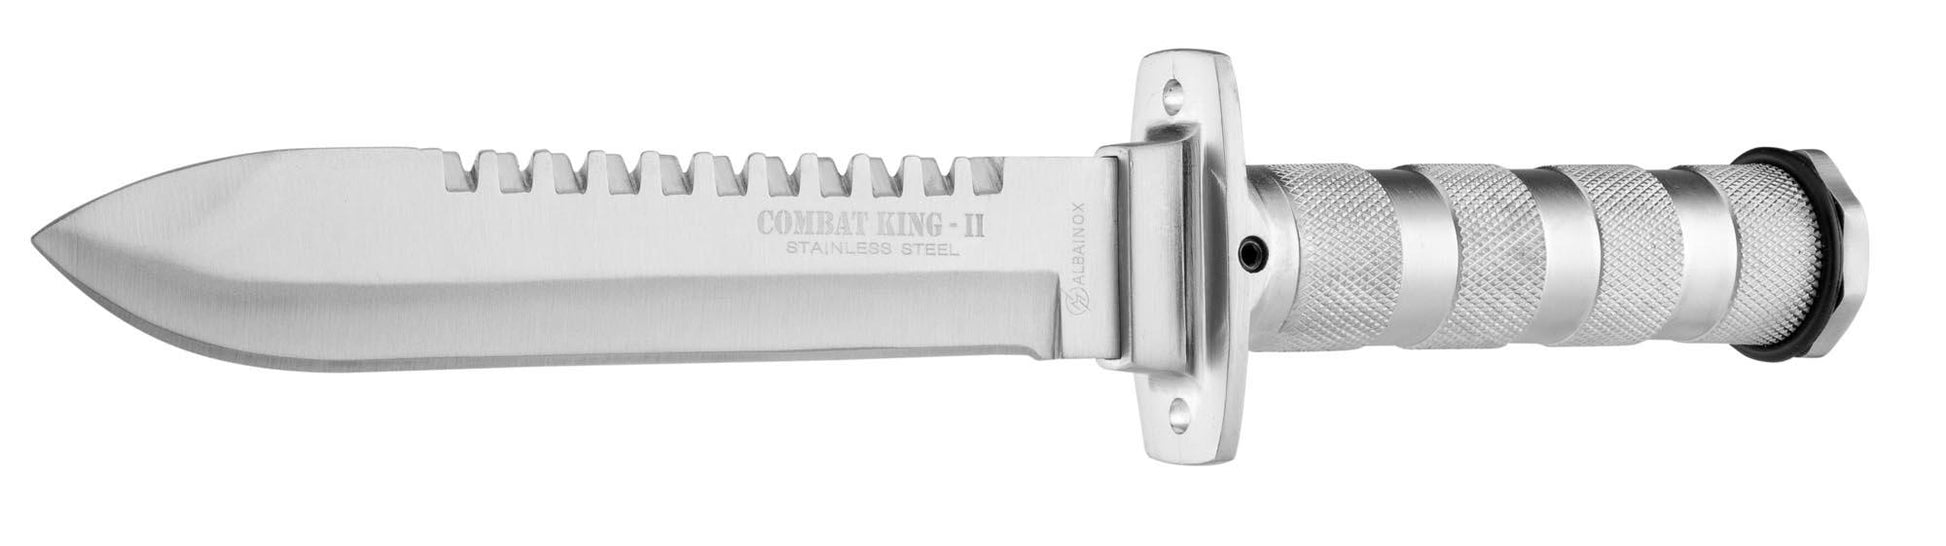 Couteau de survie King II - K25-T.A DEFENSE